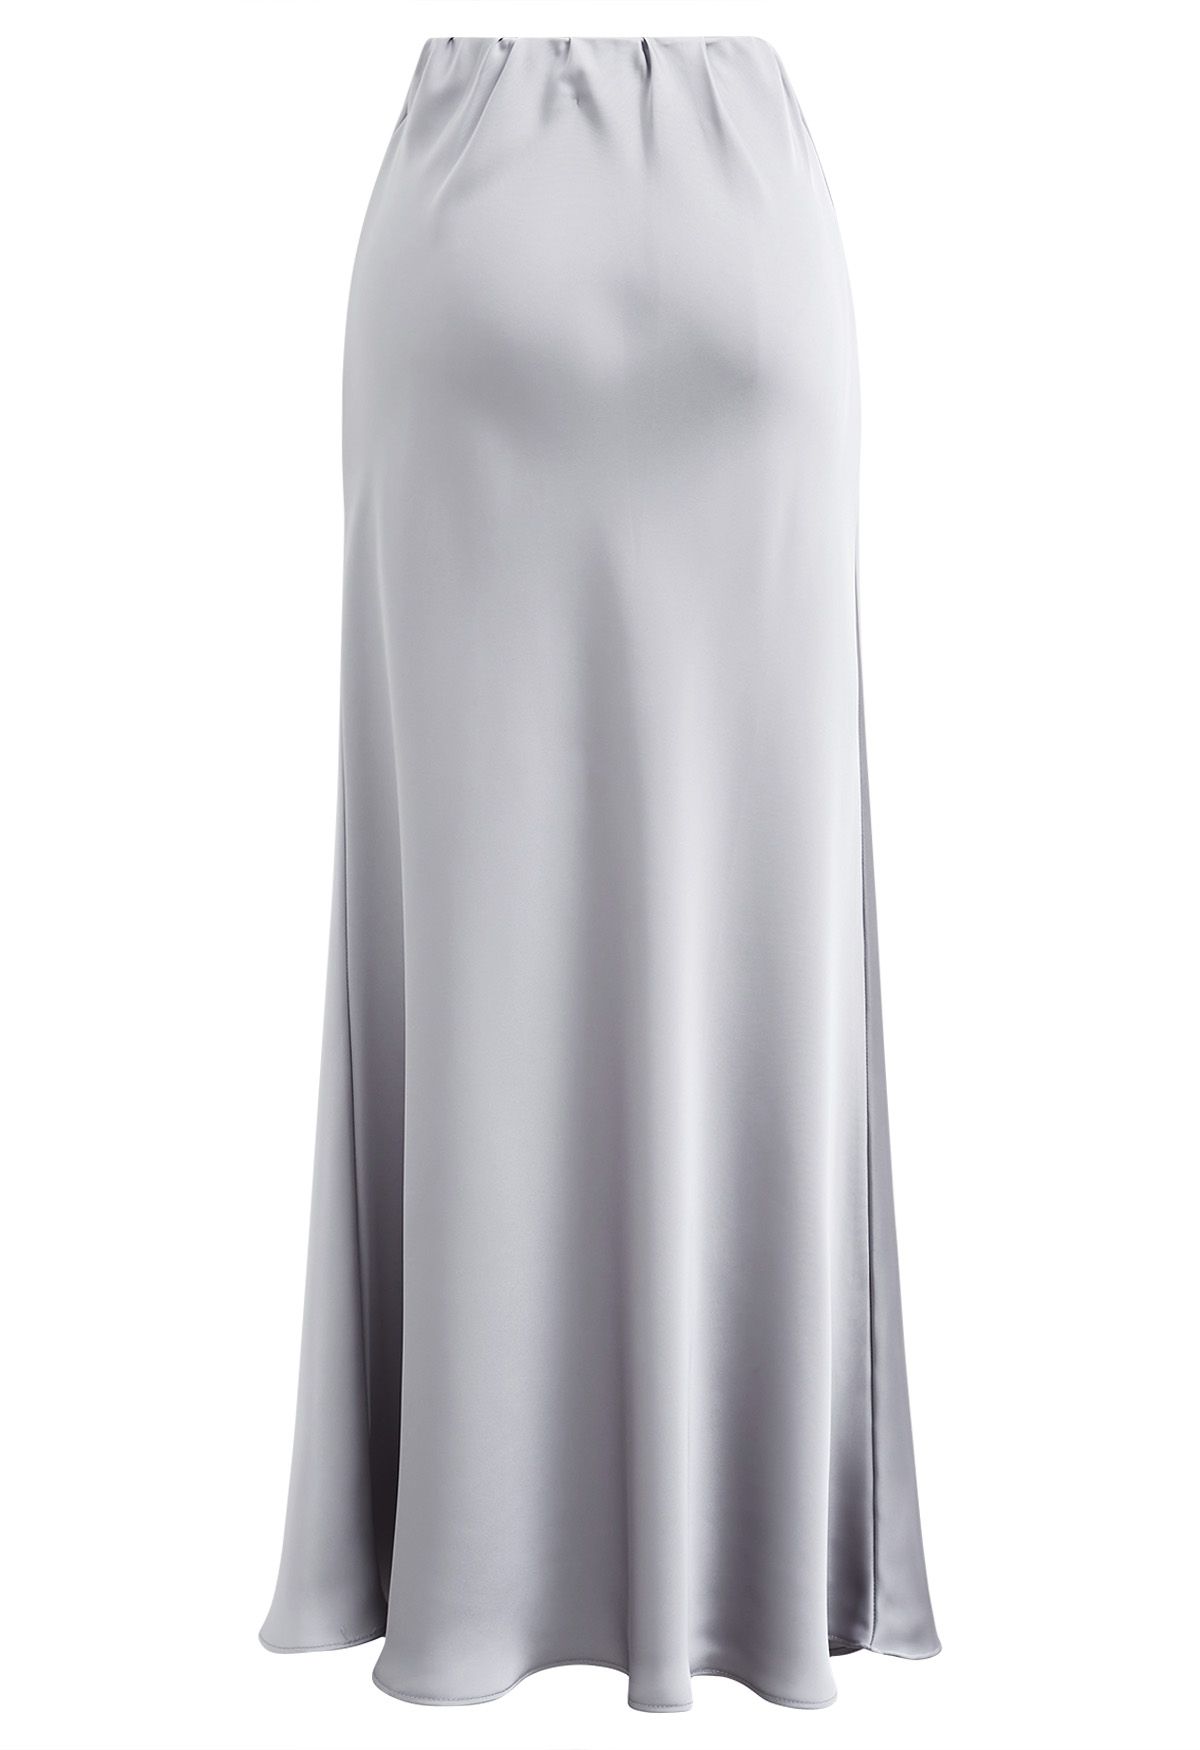 Satin Finish Mermaid Maxi Skirt in Grey